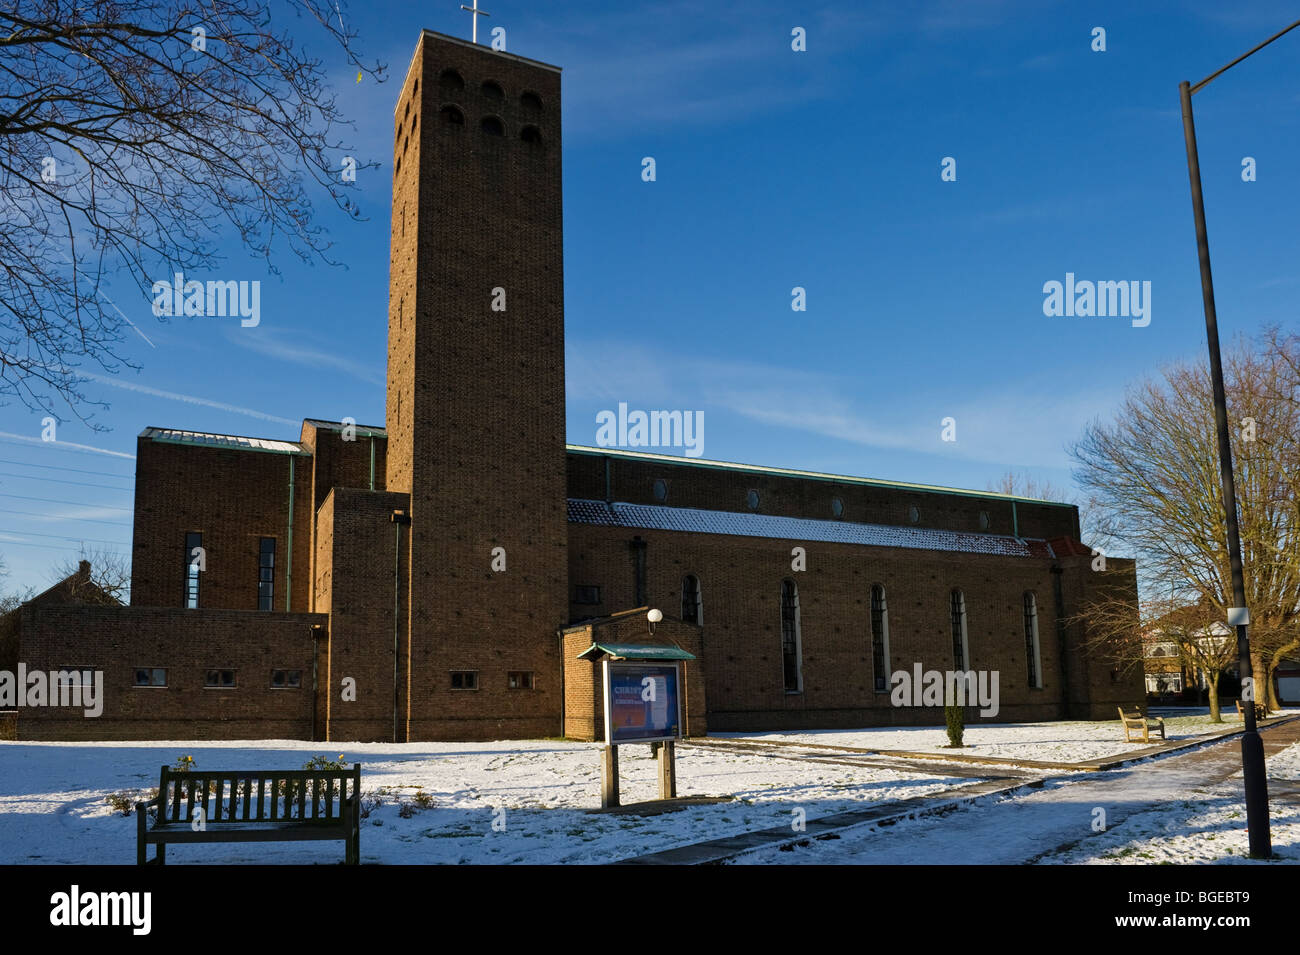 St Alban eine große städtische Pfarrkirche von North Harrow London im Winterschnee und blauem Himmel. Stockfoto